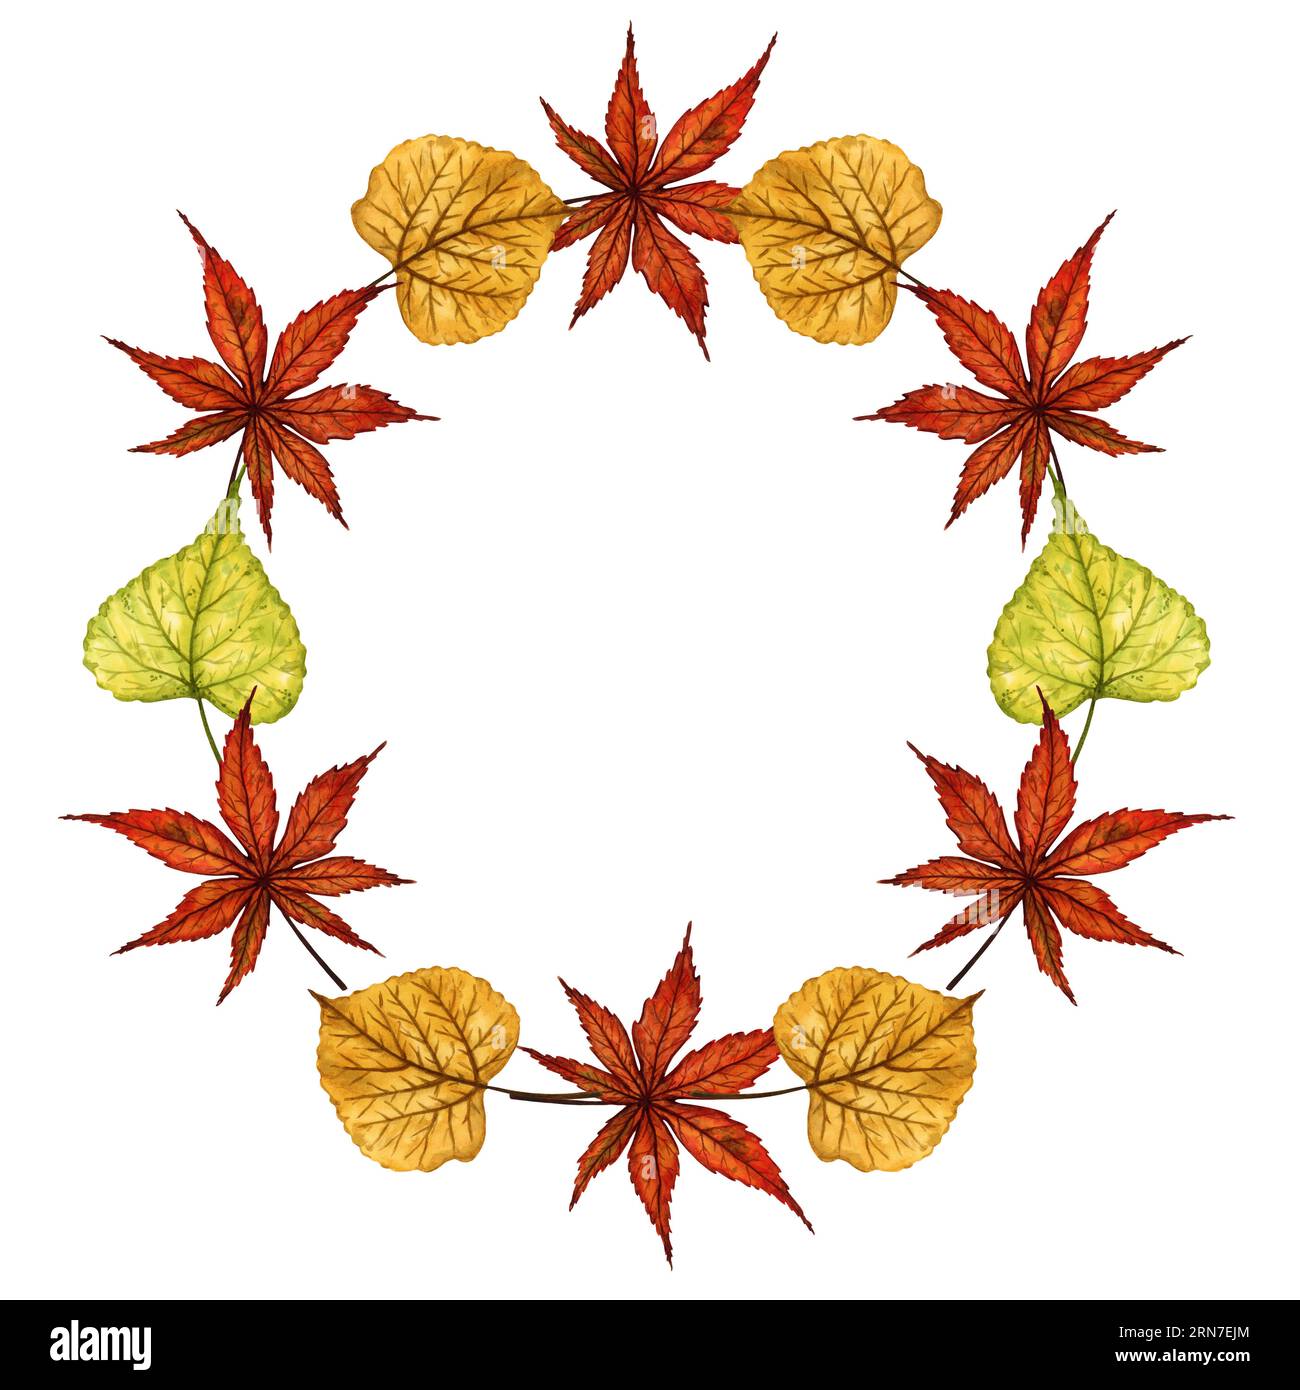 Corona de hojas de otoño, marco redondo, ilustración de acuarela dibujada a mano. Plantilla para logotipo, banner, tarjeta de felicitación, invitación. Foto de stock